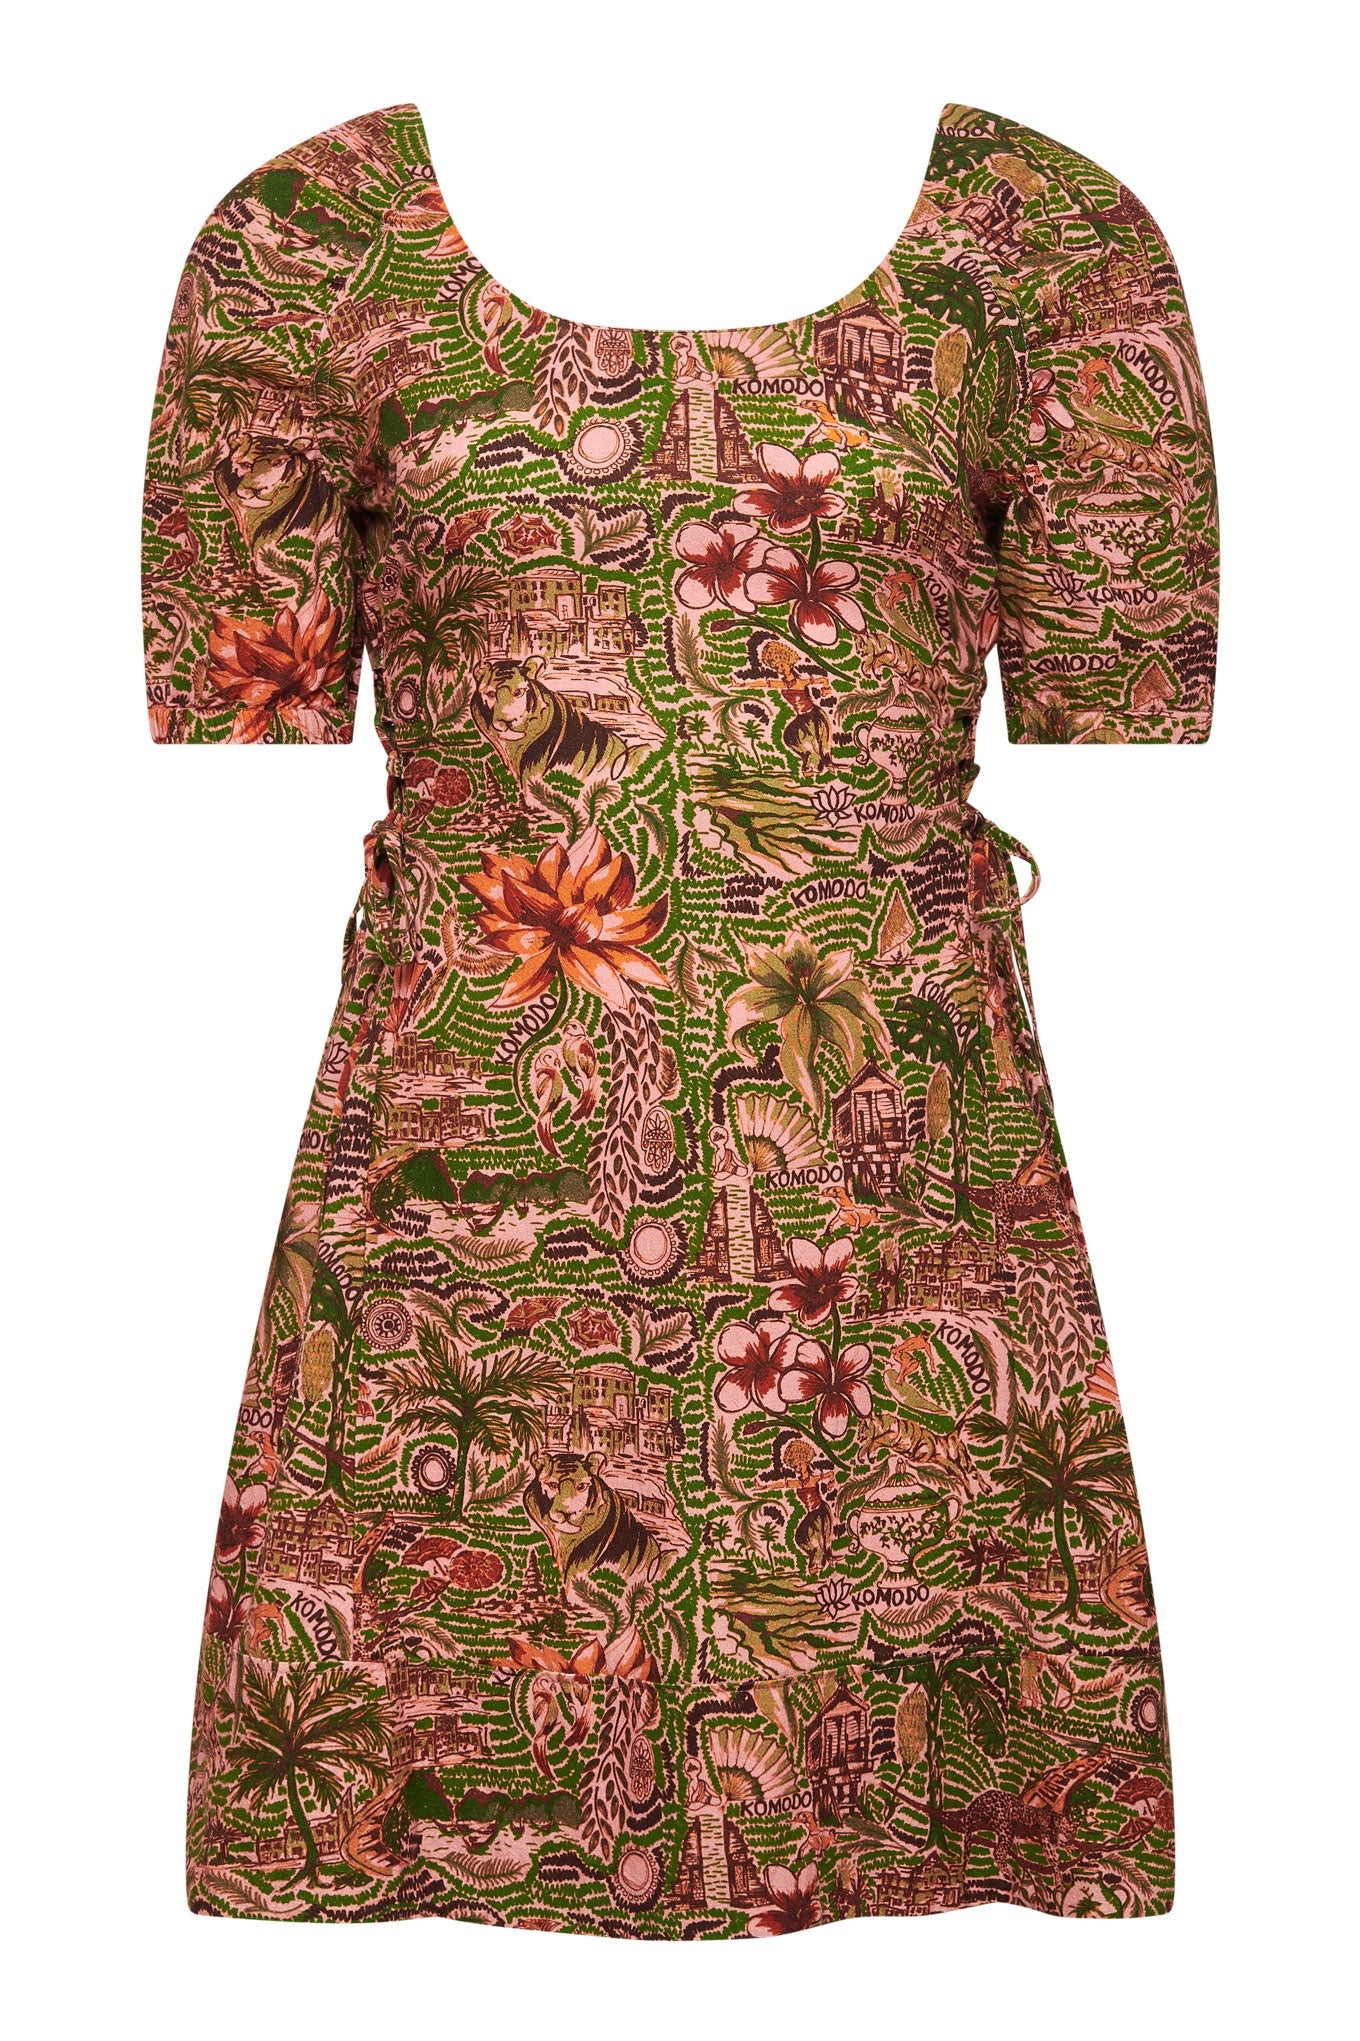 BALI - Tropical Print Organic Cotton Dress Pink